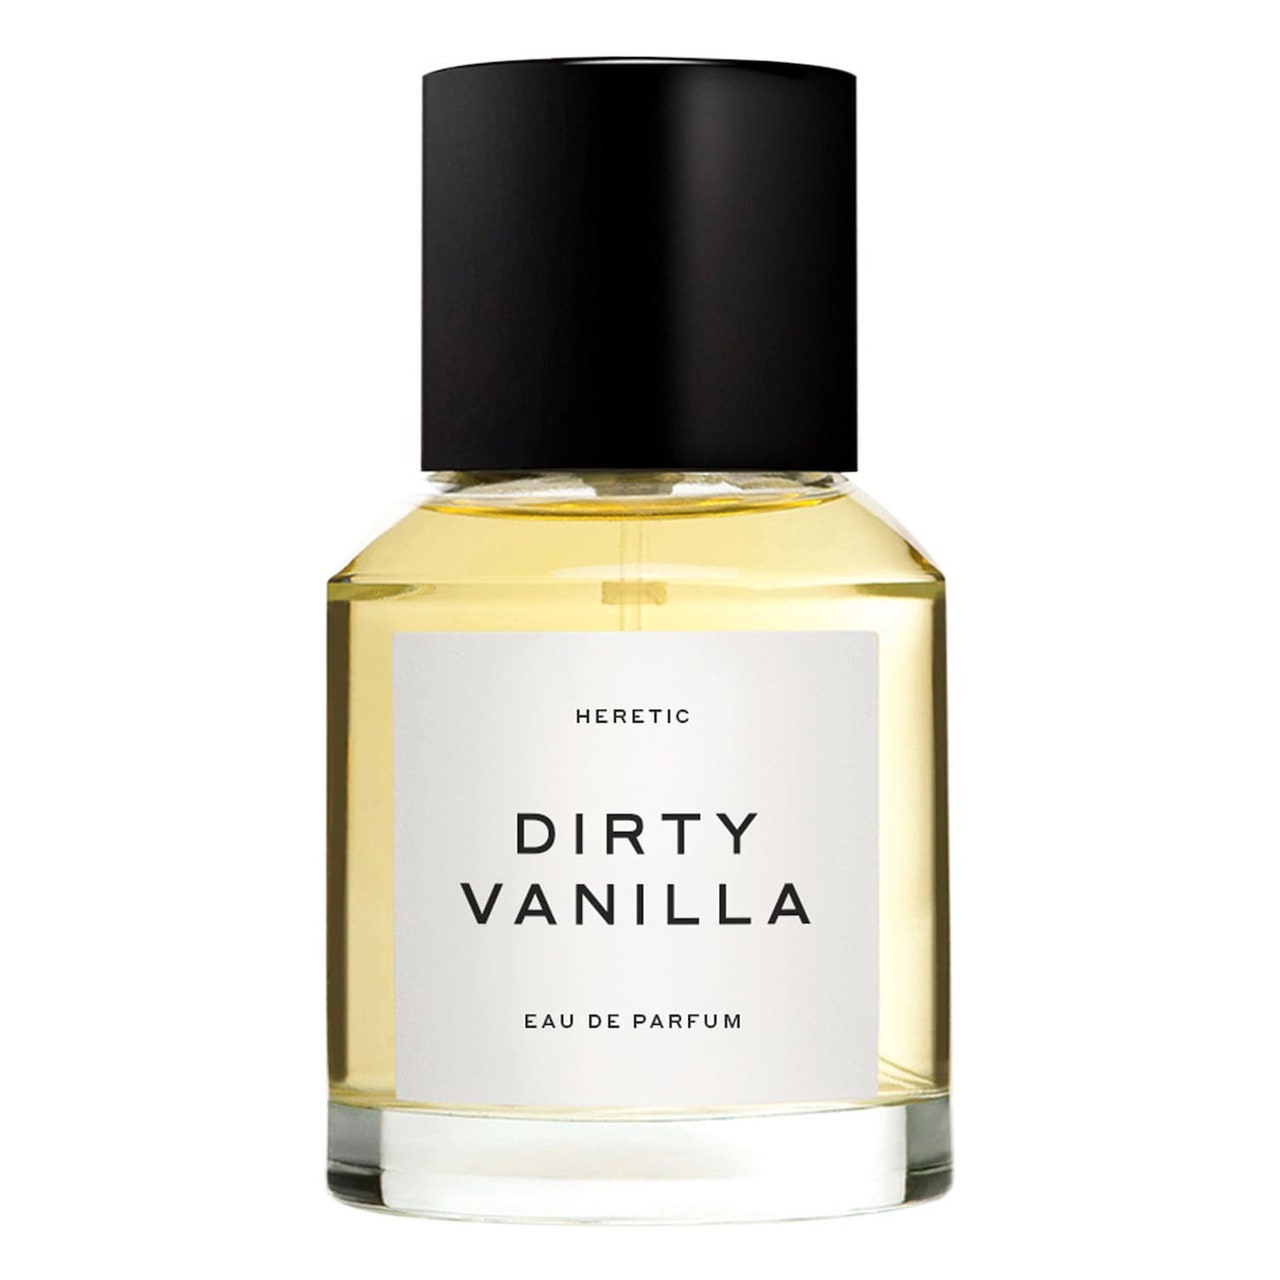 Heretic Dirty Vanilla Eau de Parfum mit weißem Etikett und schwarzer Kappe auf weißem Hintergrund